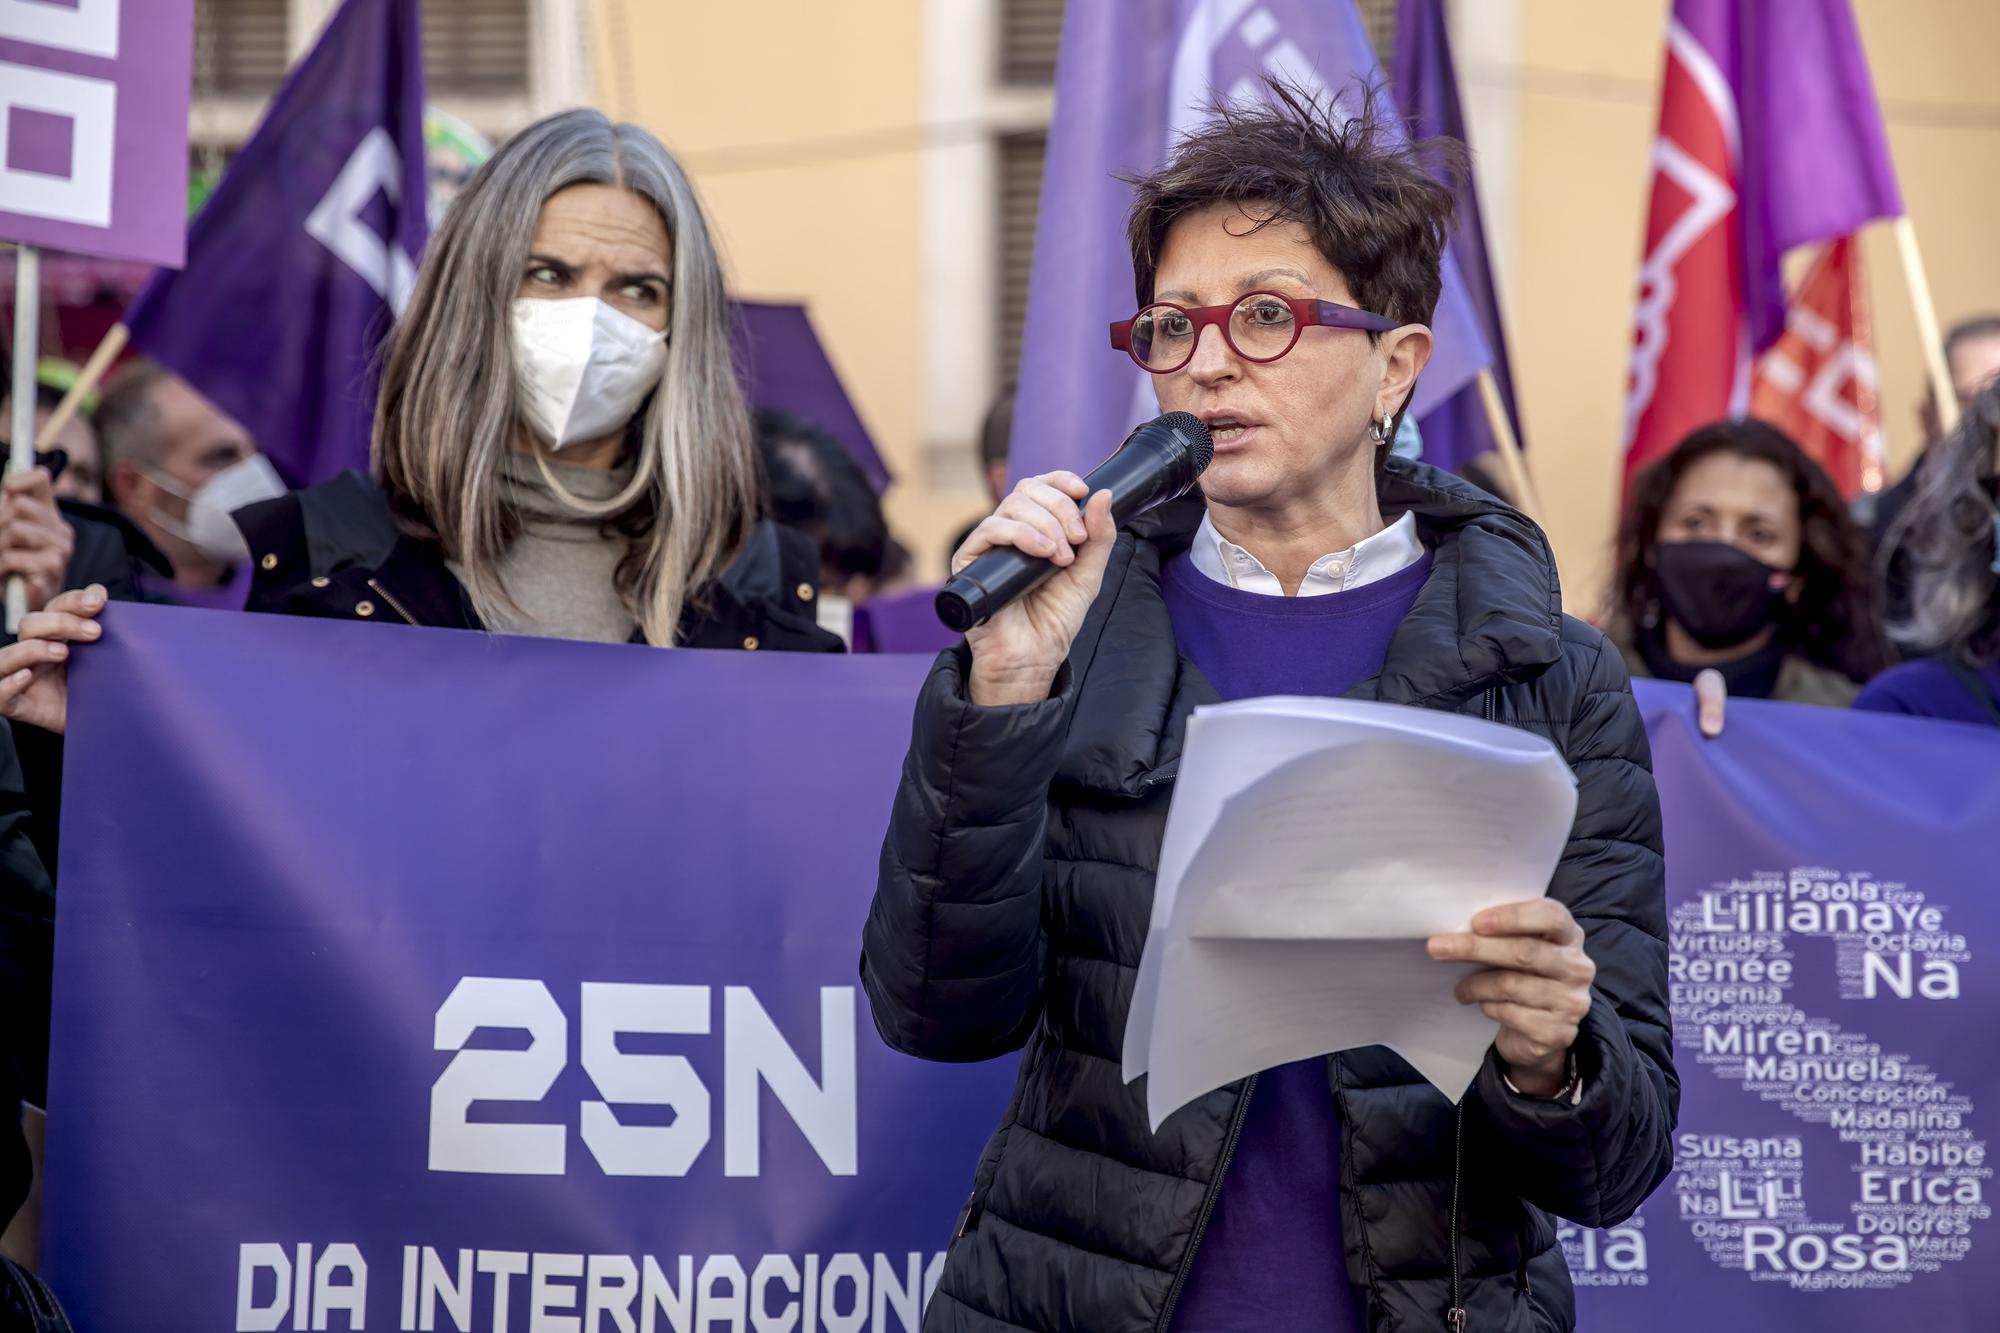 Manifestación del 25-N en Mallorca: Concentración de sindicatos en la Plaza del Olivar